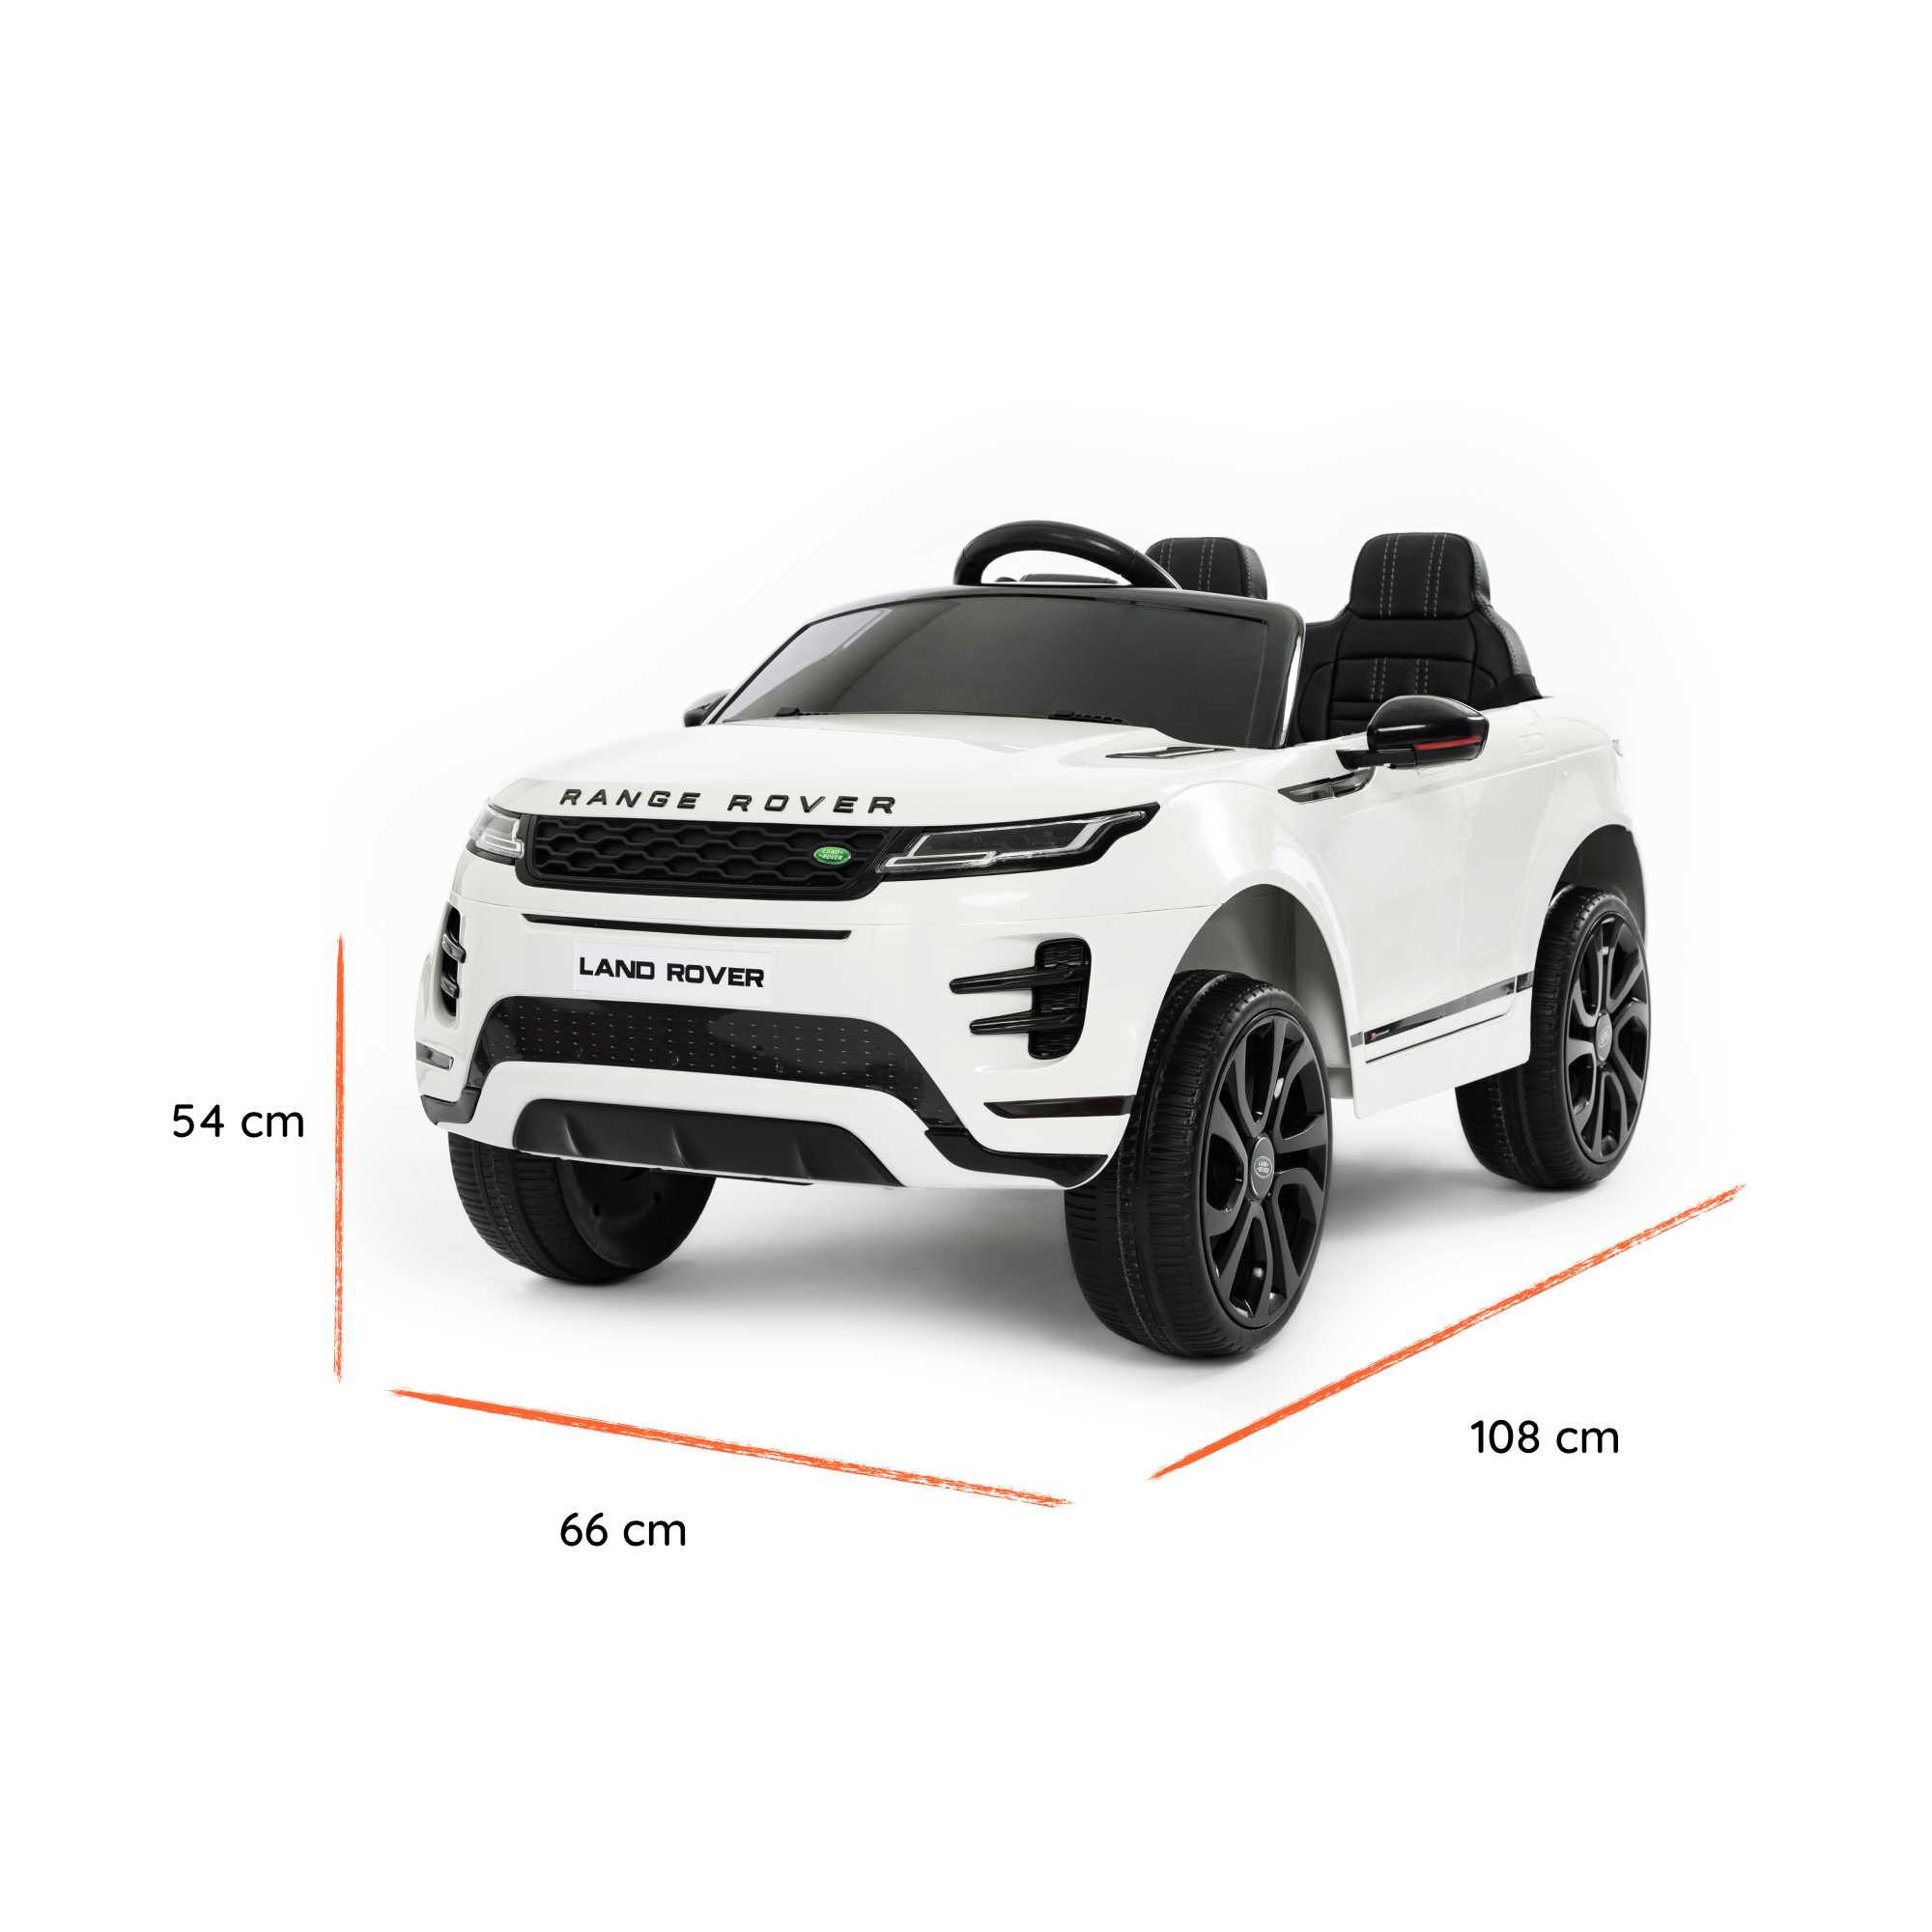 Range Rover Evoque branco dimensões